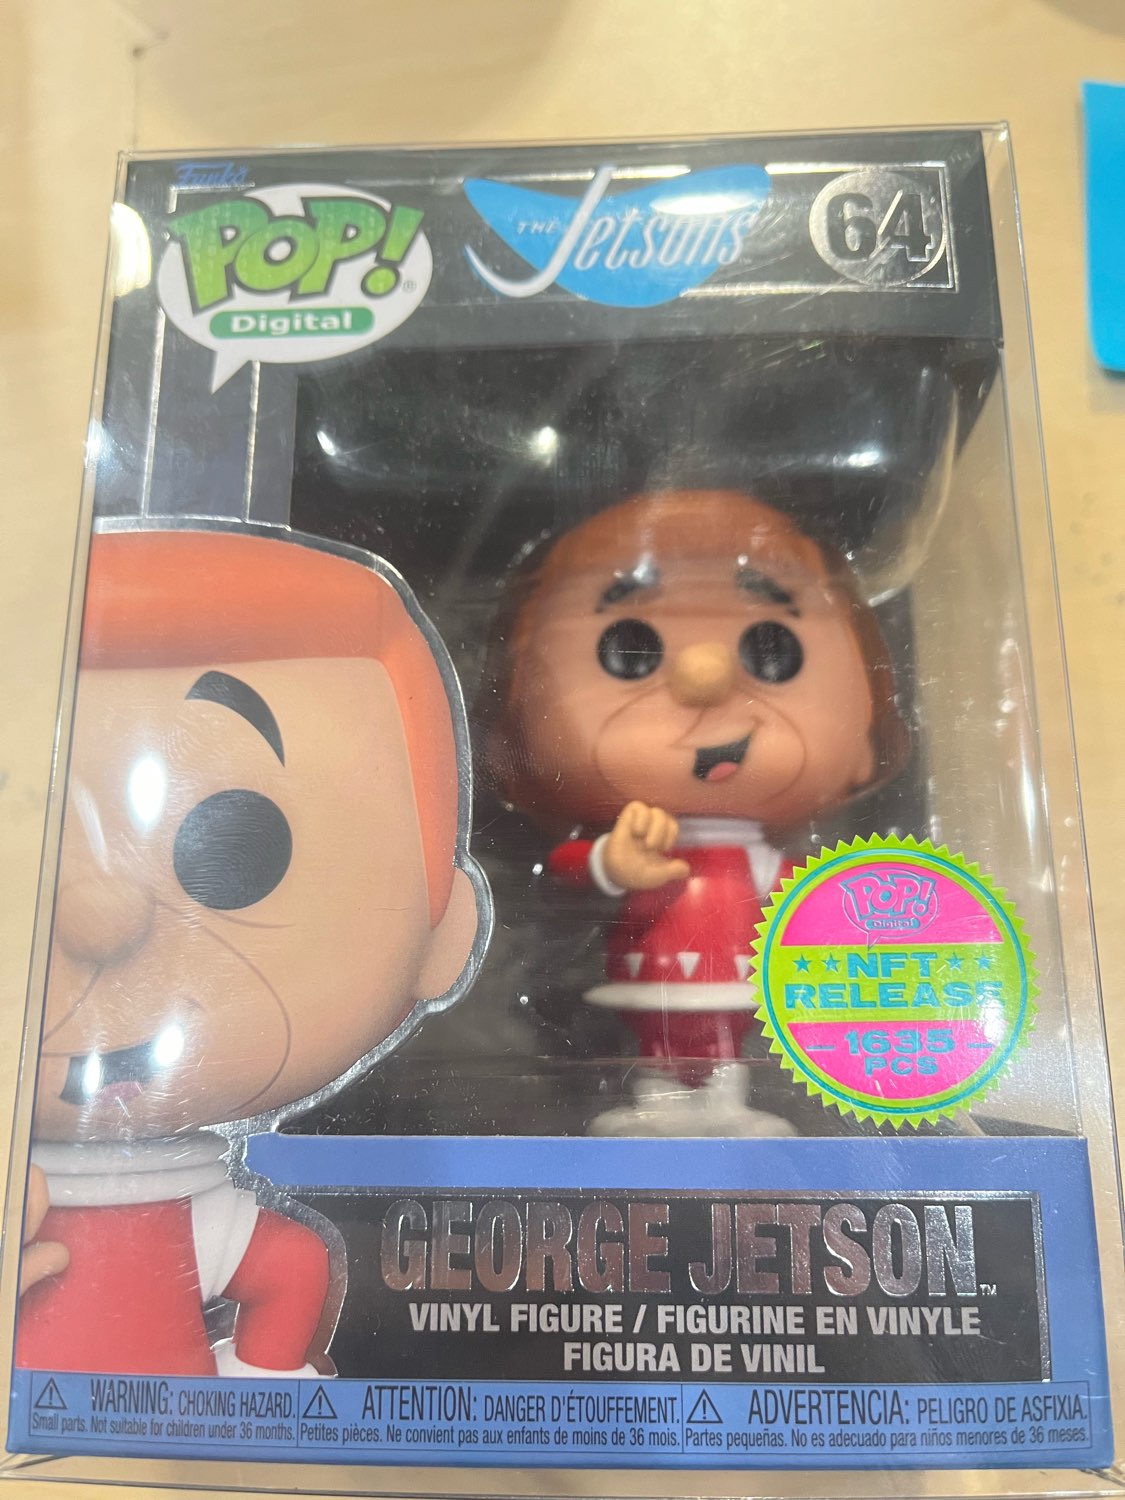 Funko Pop! Digital Jetsons #64 George Jetson (NFT Release 1635 PC)